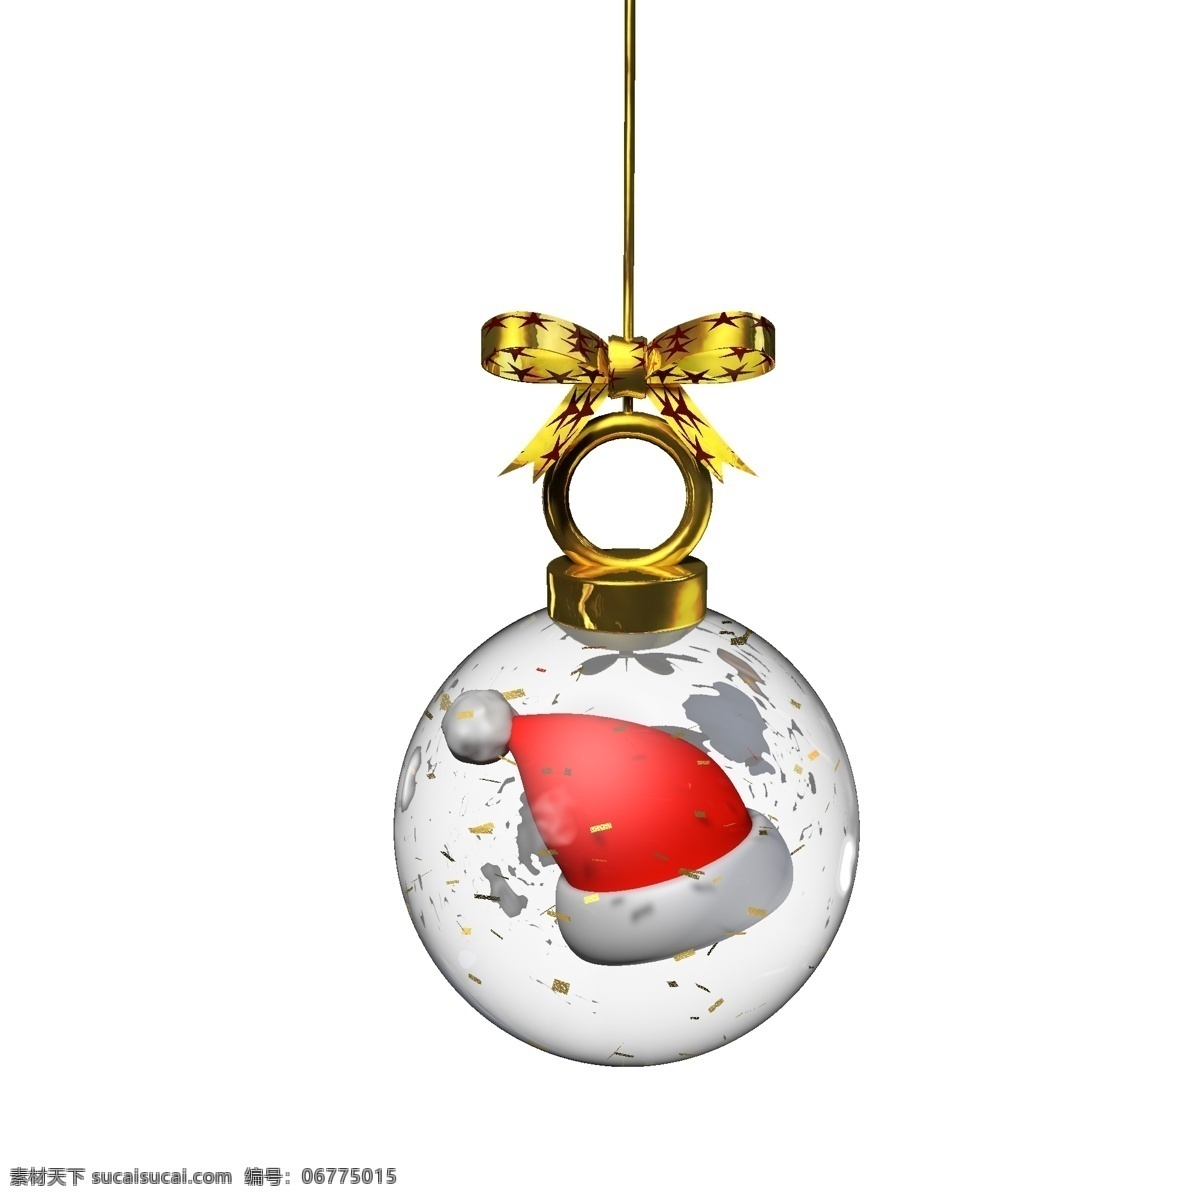 金色 圣诞 元素 水晶 玻璃球 挂件 帽 彩色 卡通 红色 圣诞元素 圣诞帽 水晶球